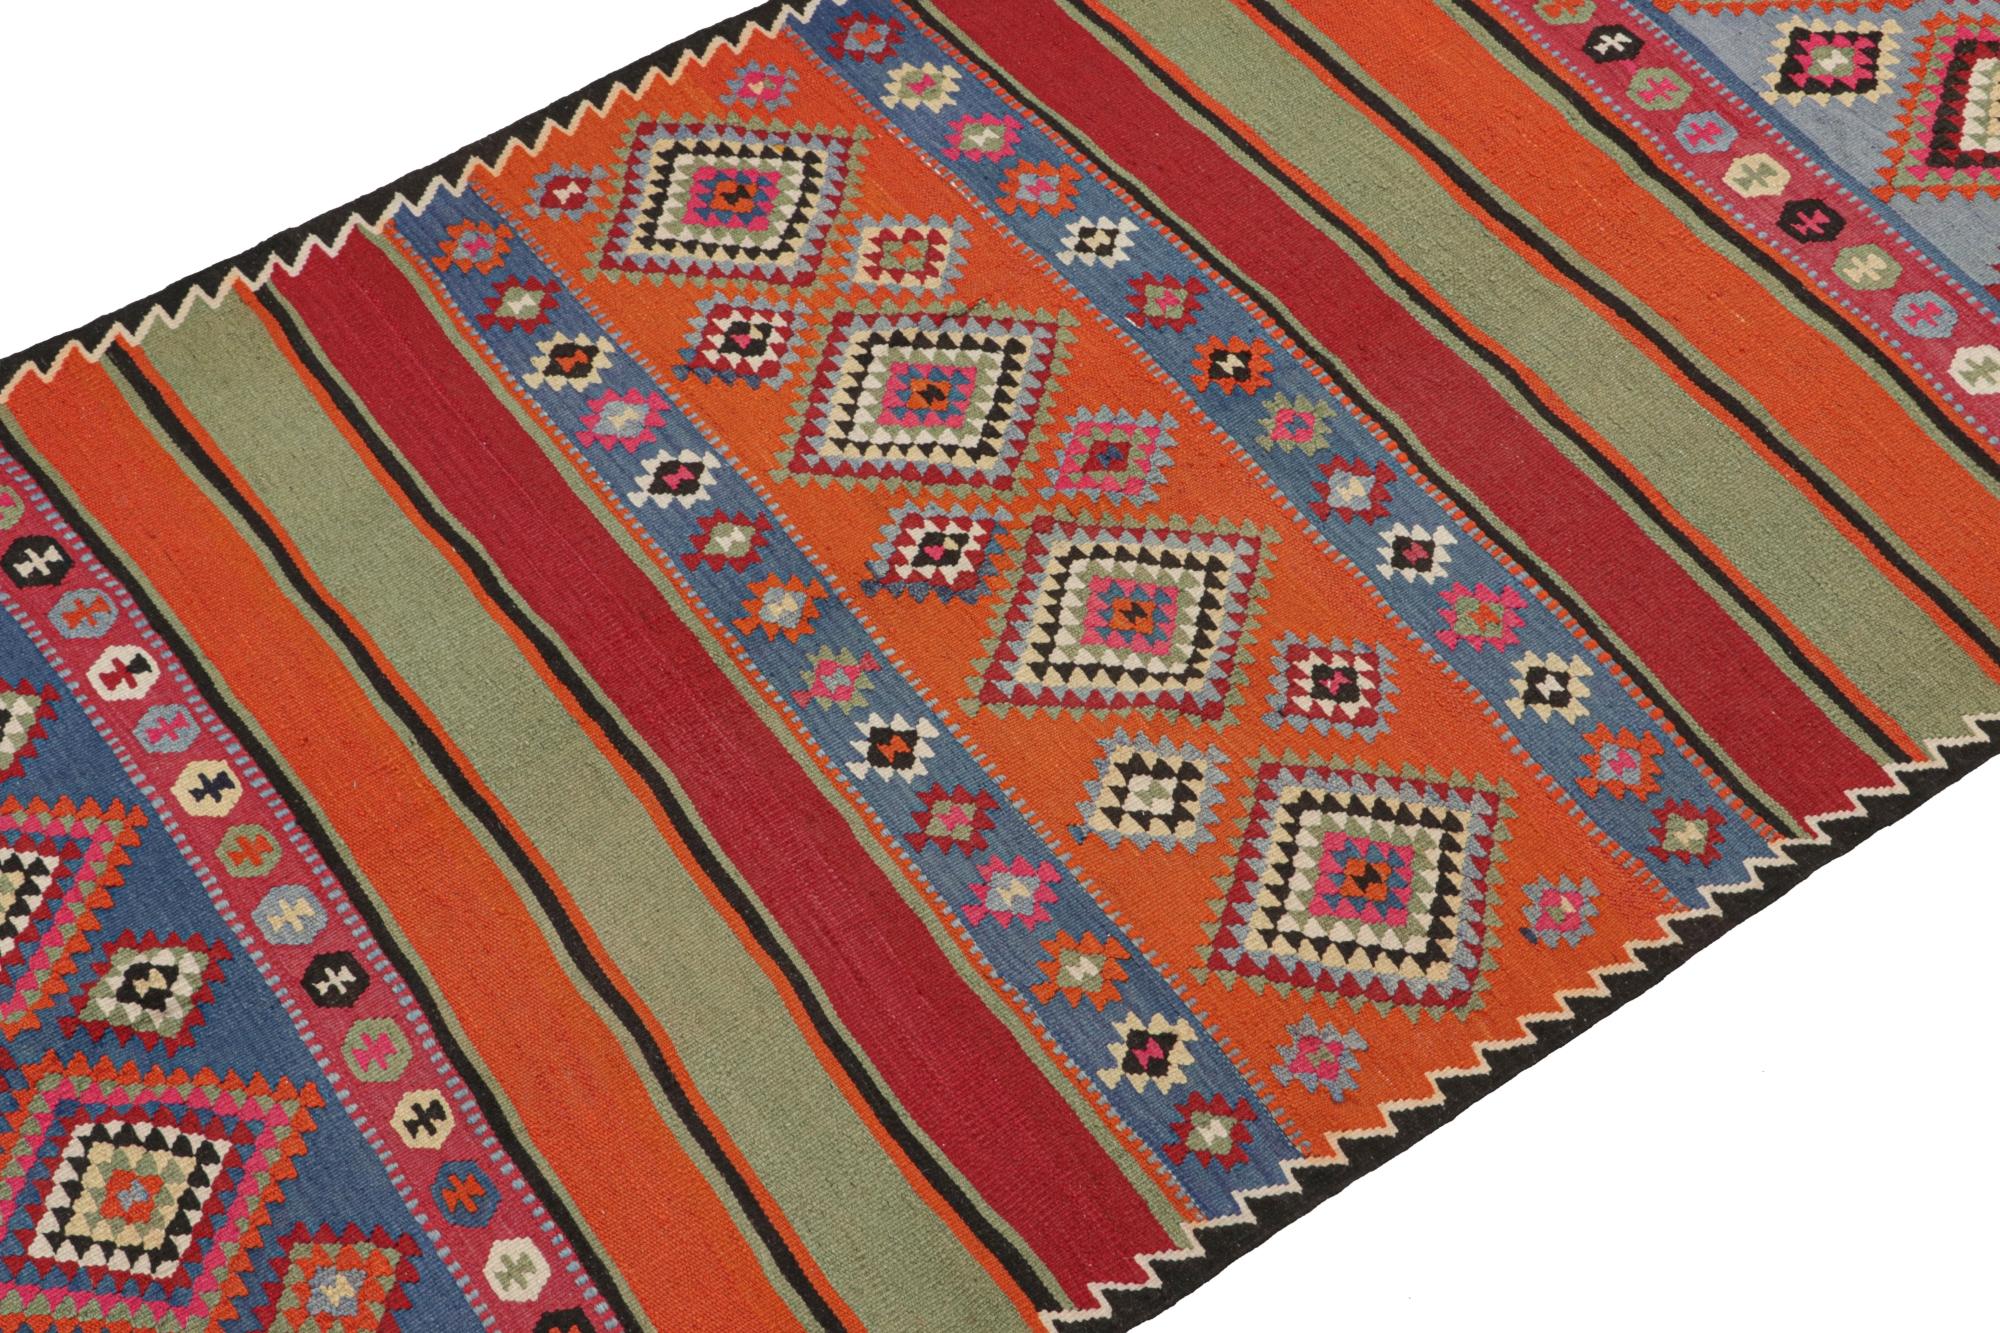 Dieser alte persische Kilim im Format 5x13 aus dem Nordwesten ist ein Stammesteppich, der vermutlich aus Zanjan stammt. Er ist aus Wolle handgewebt und stammt aus der Zeit um 1950-1960. 

Weiter zum Design:

Sein Design ist ein komplementäres Spiel